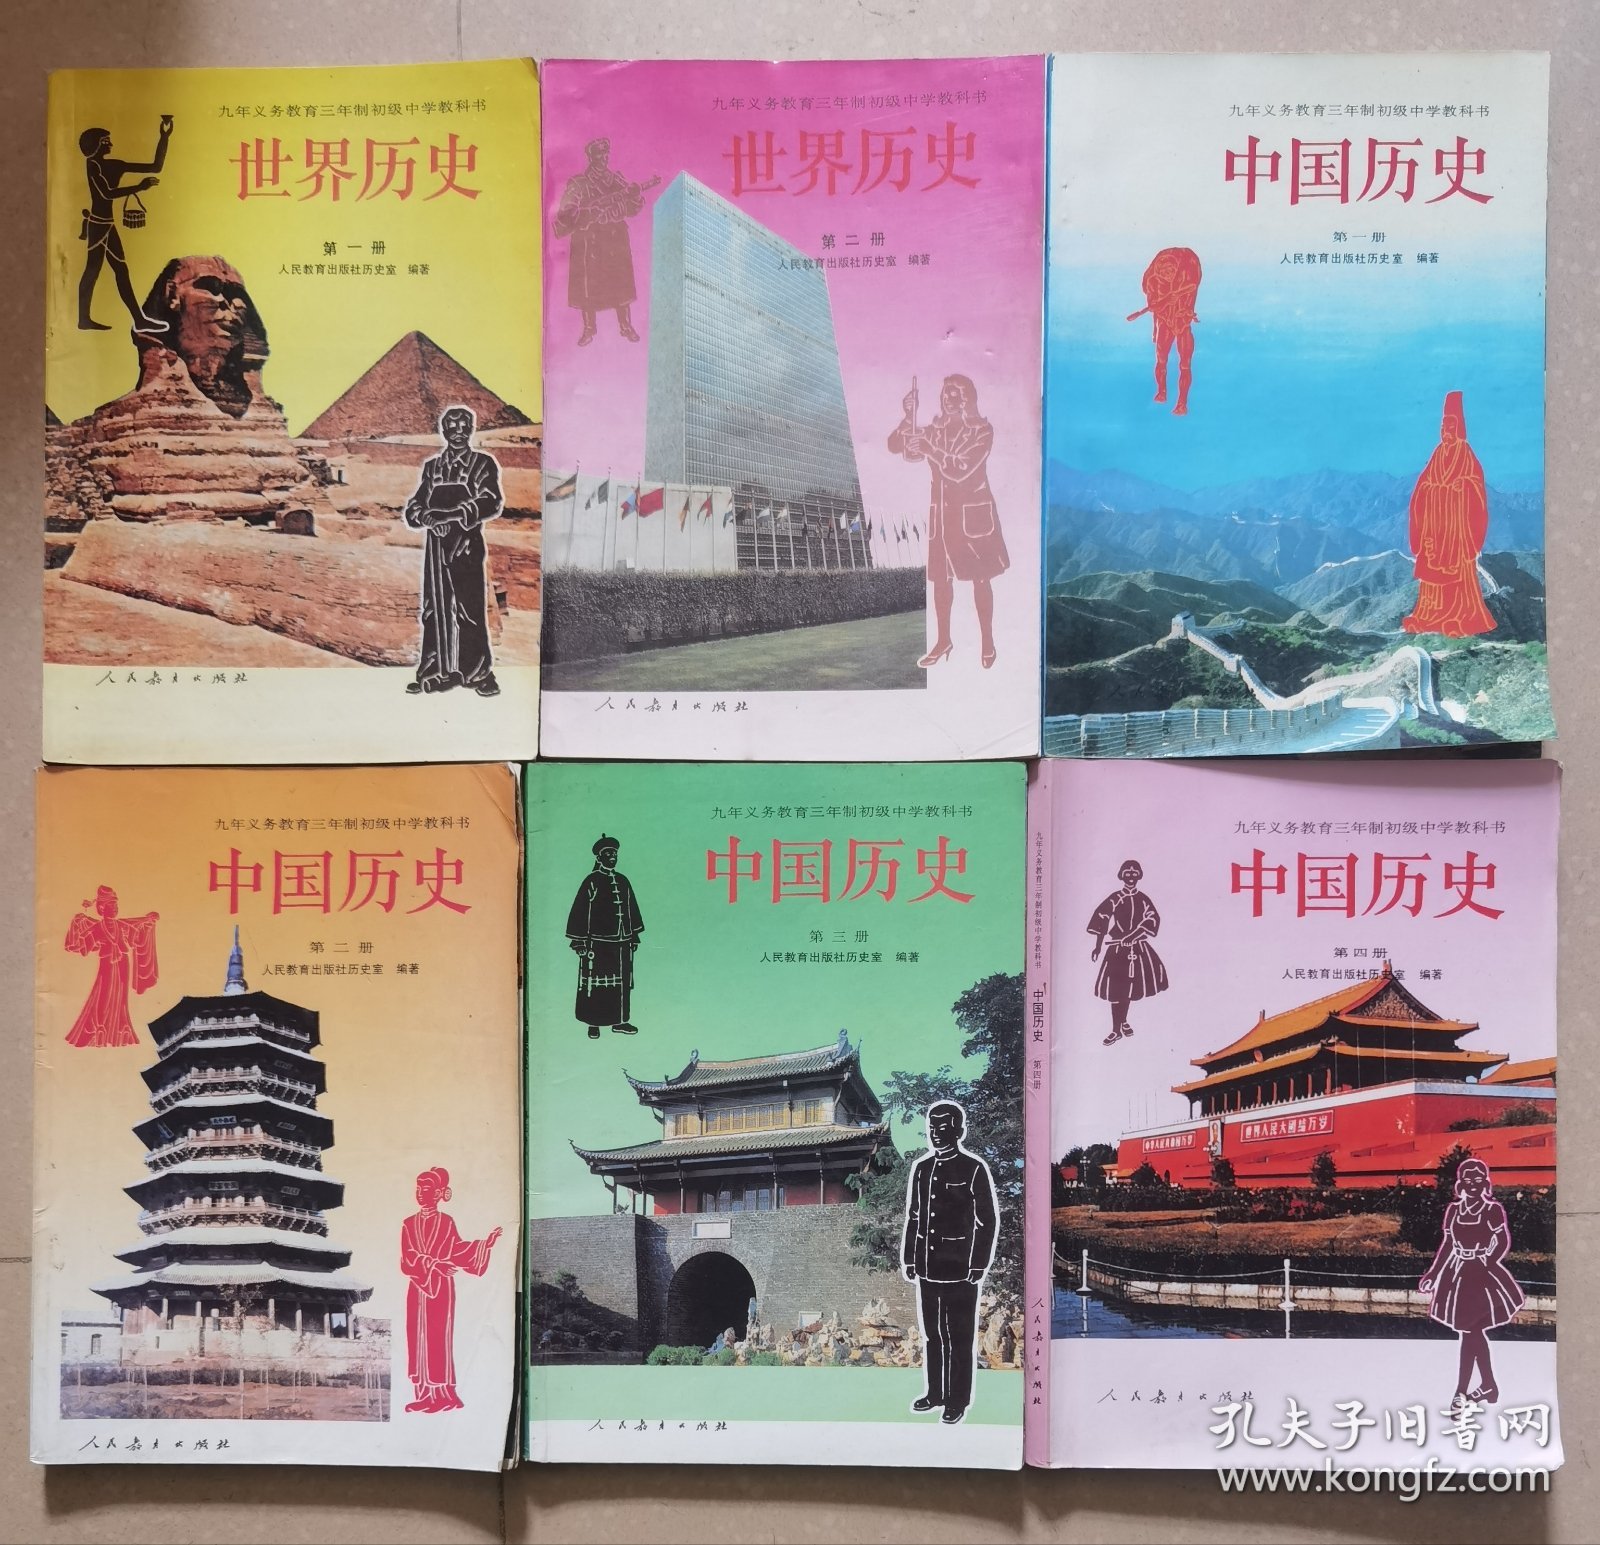 九年义务教育三年制初级中学教科书《世界历史》1-2、《中国历史》1-4，共6册。